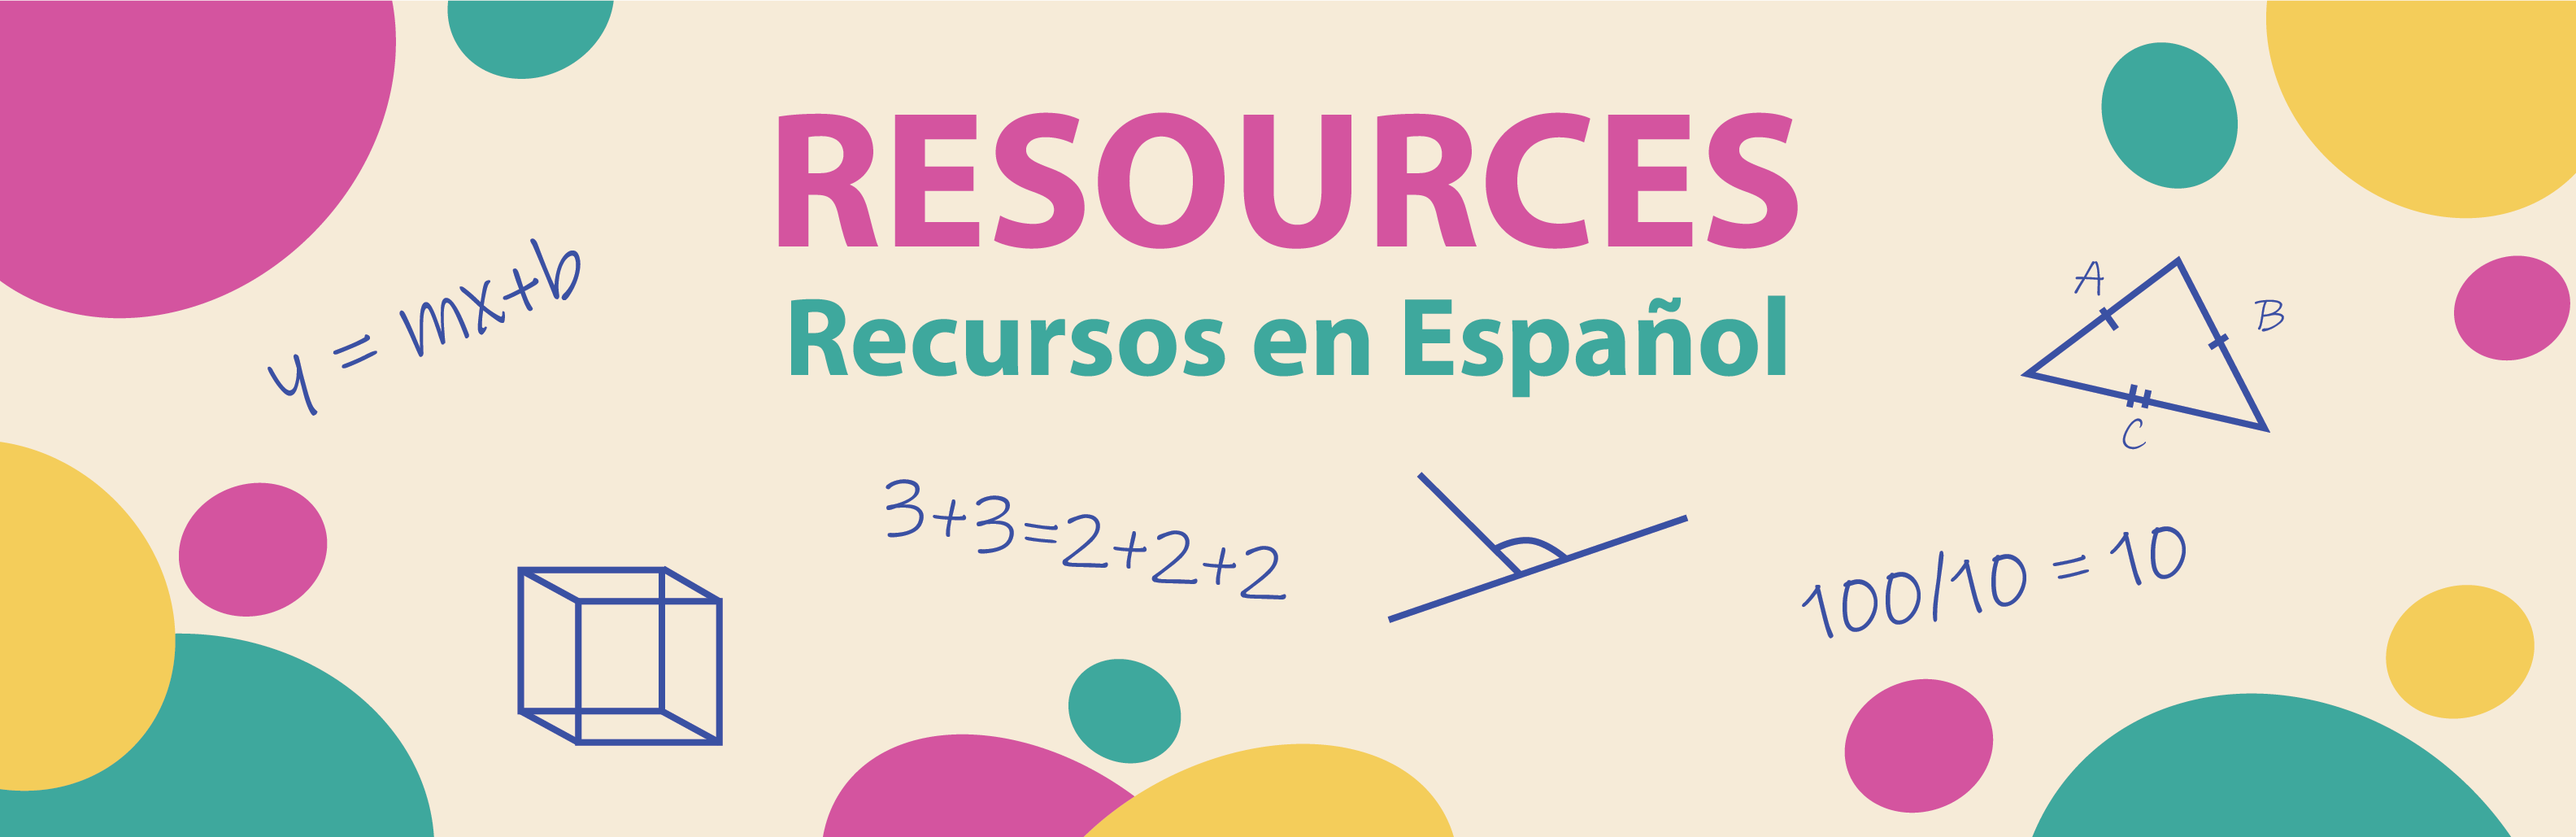 Spanish Resources/Recursos en Español